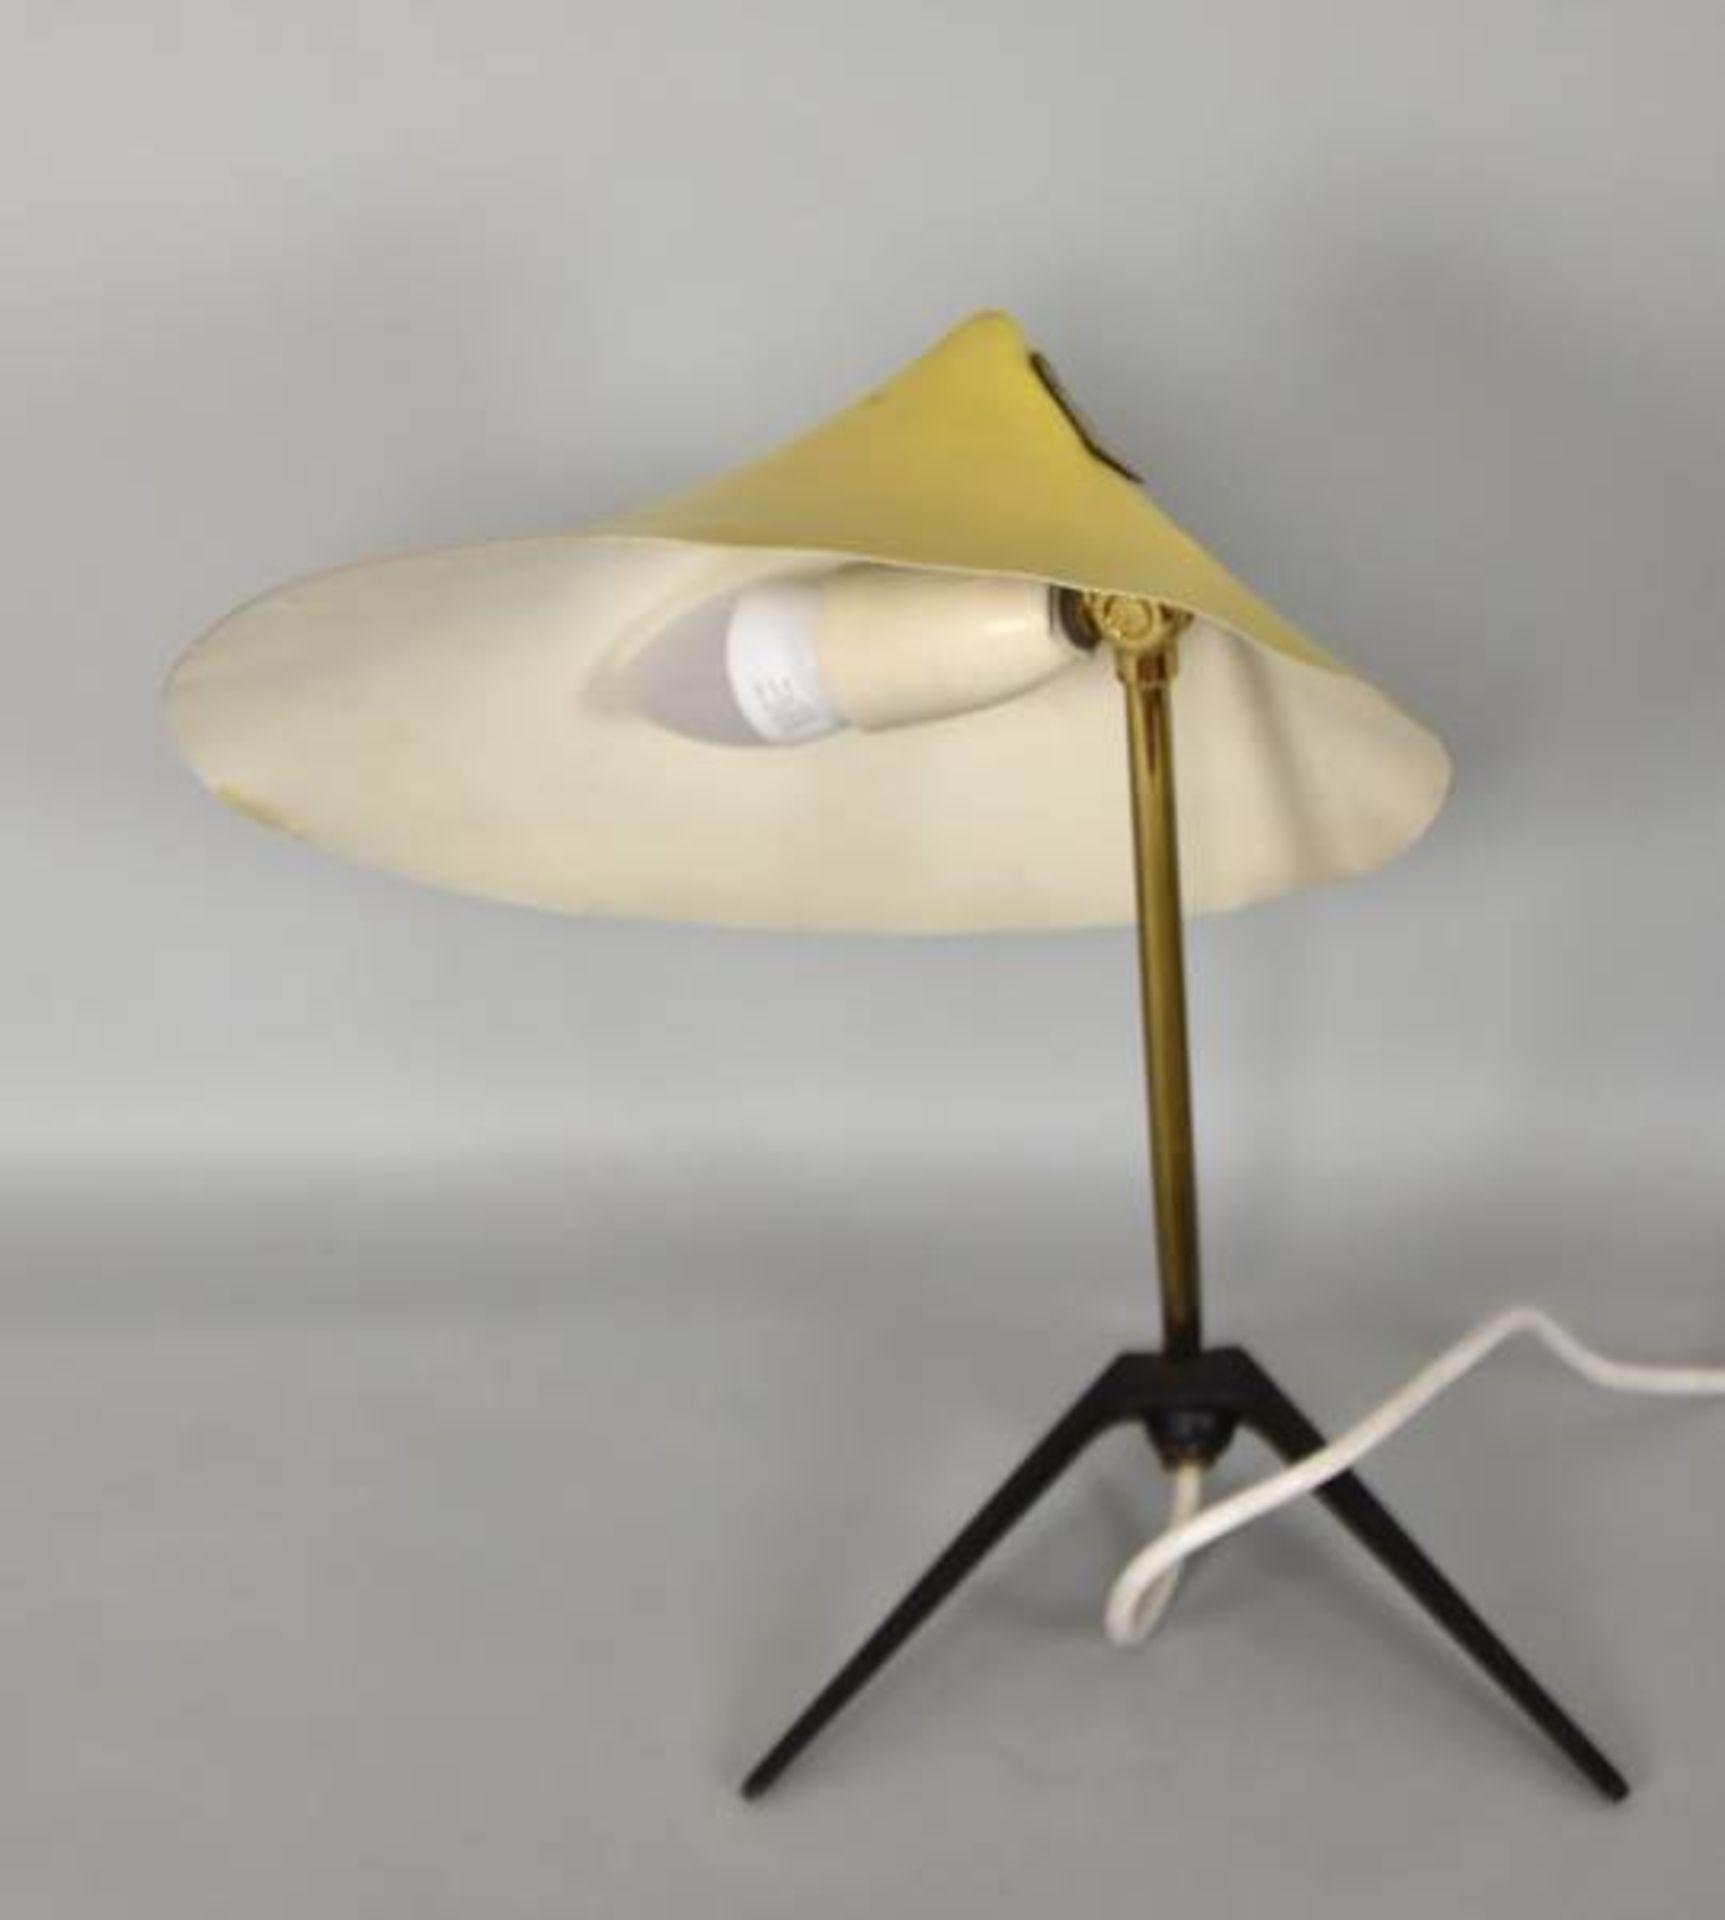 KRÄHENFUSSLAMPE Gelber Schirm aus Alu, geformt wie ein Hut, gebogter Schaft aus Messing, - Bild 3 aus 4